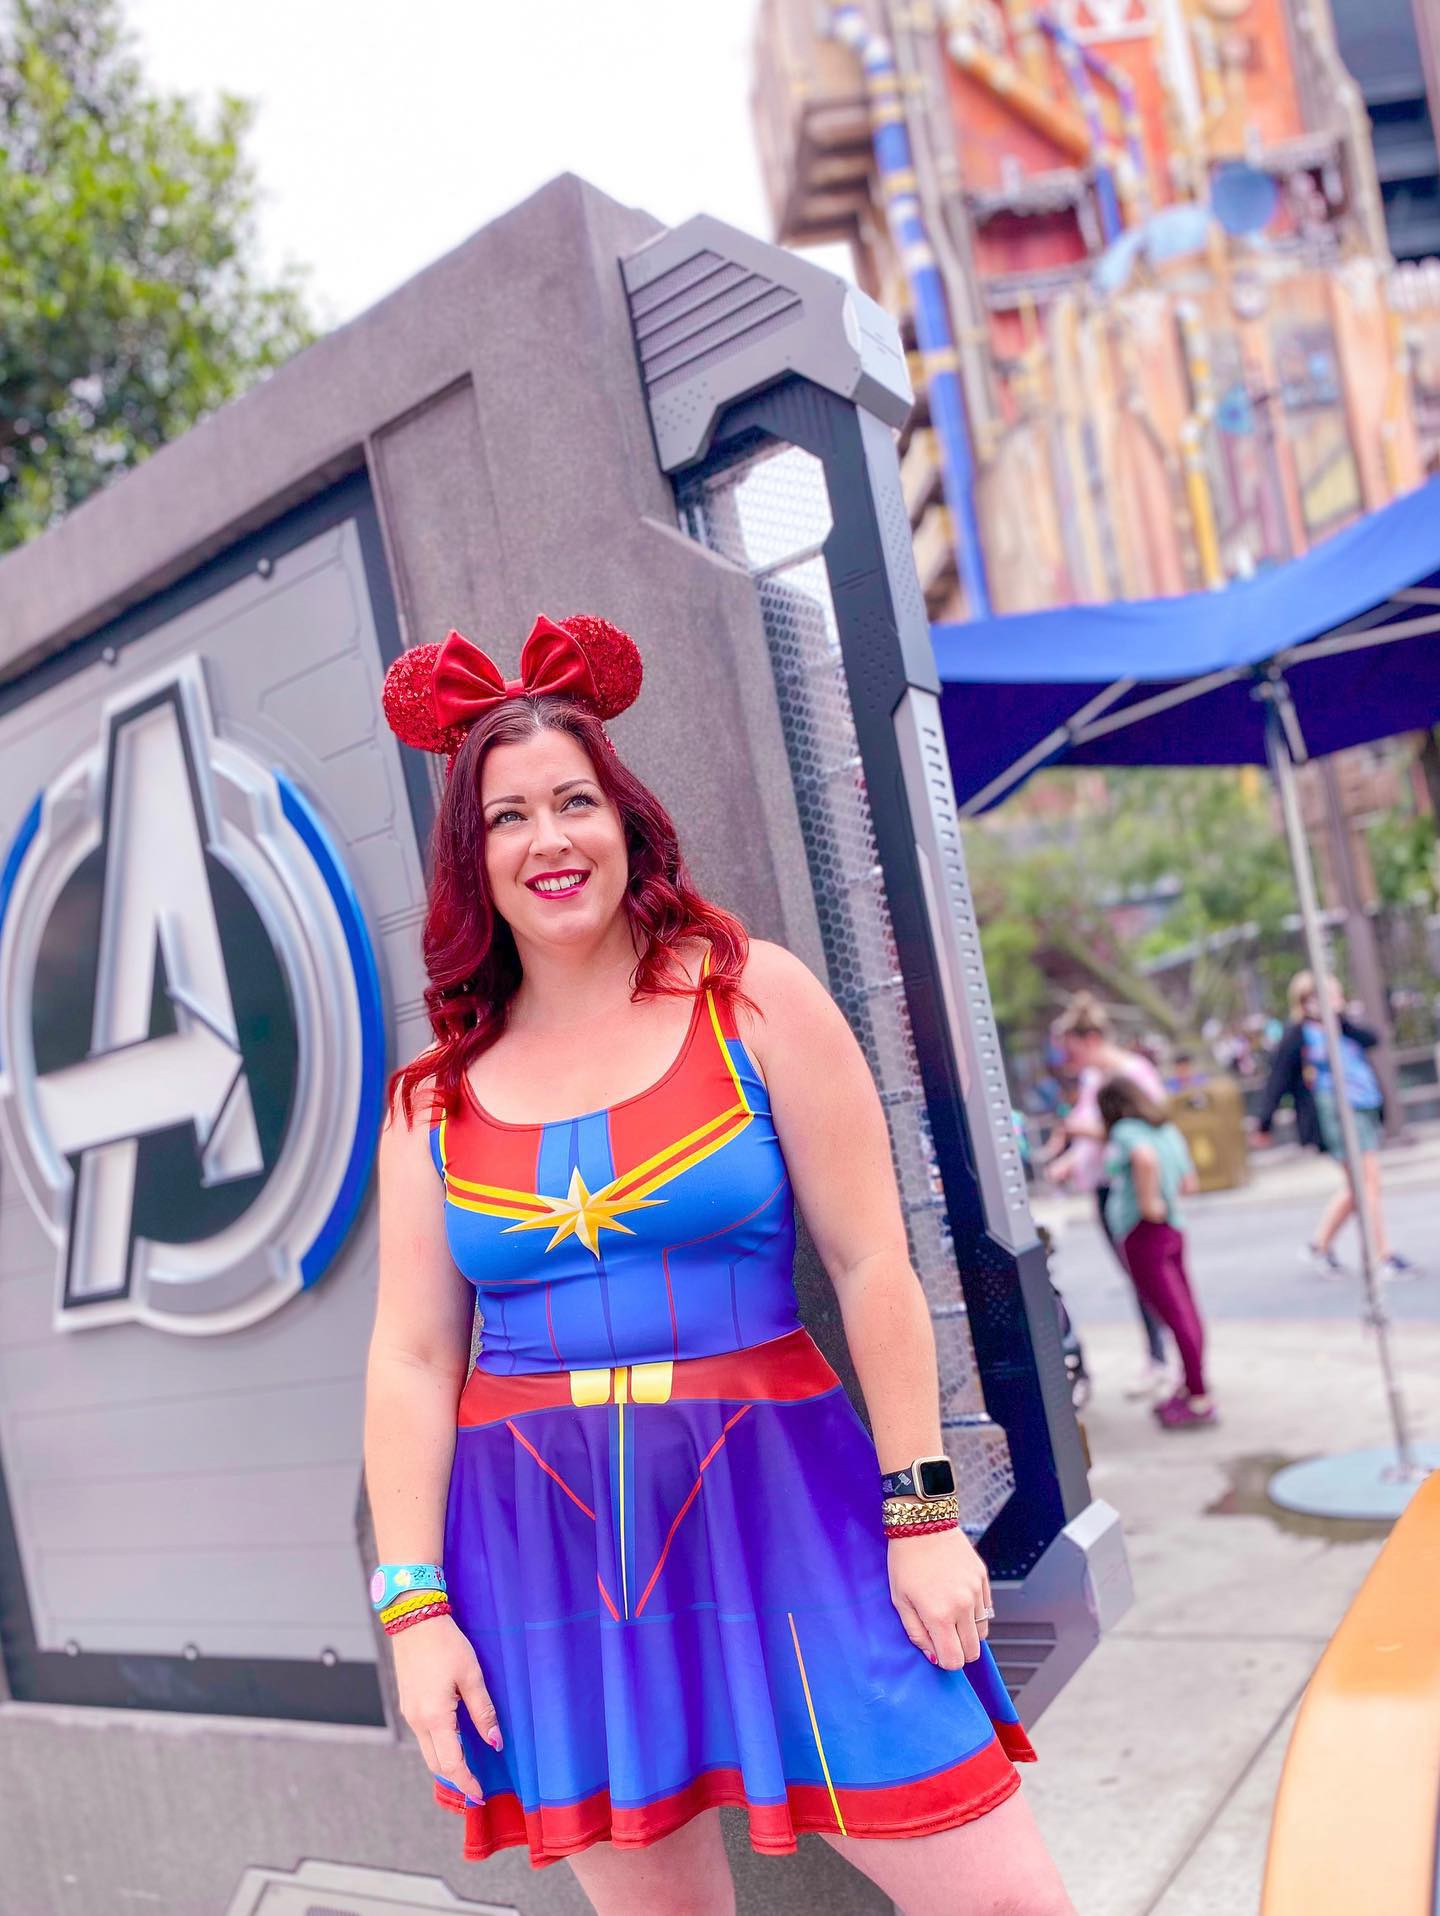 The Marvel Captain Skater Dress- Disneybounding, cosplay, running style avengers dresscaptain marvelSkater DressWrong Lever Clothing